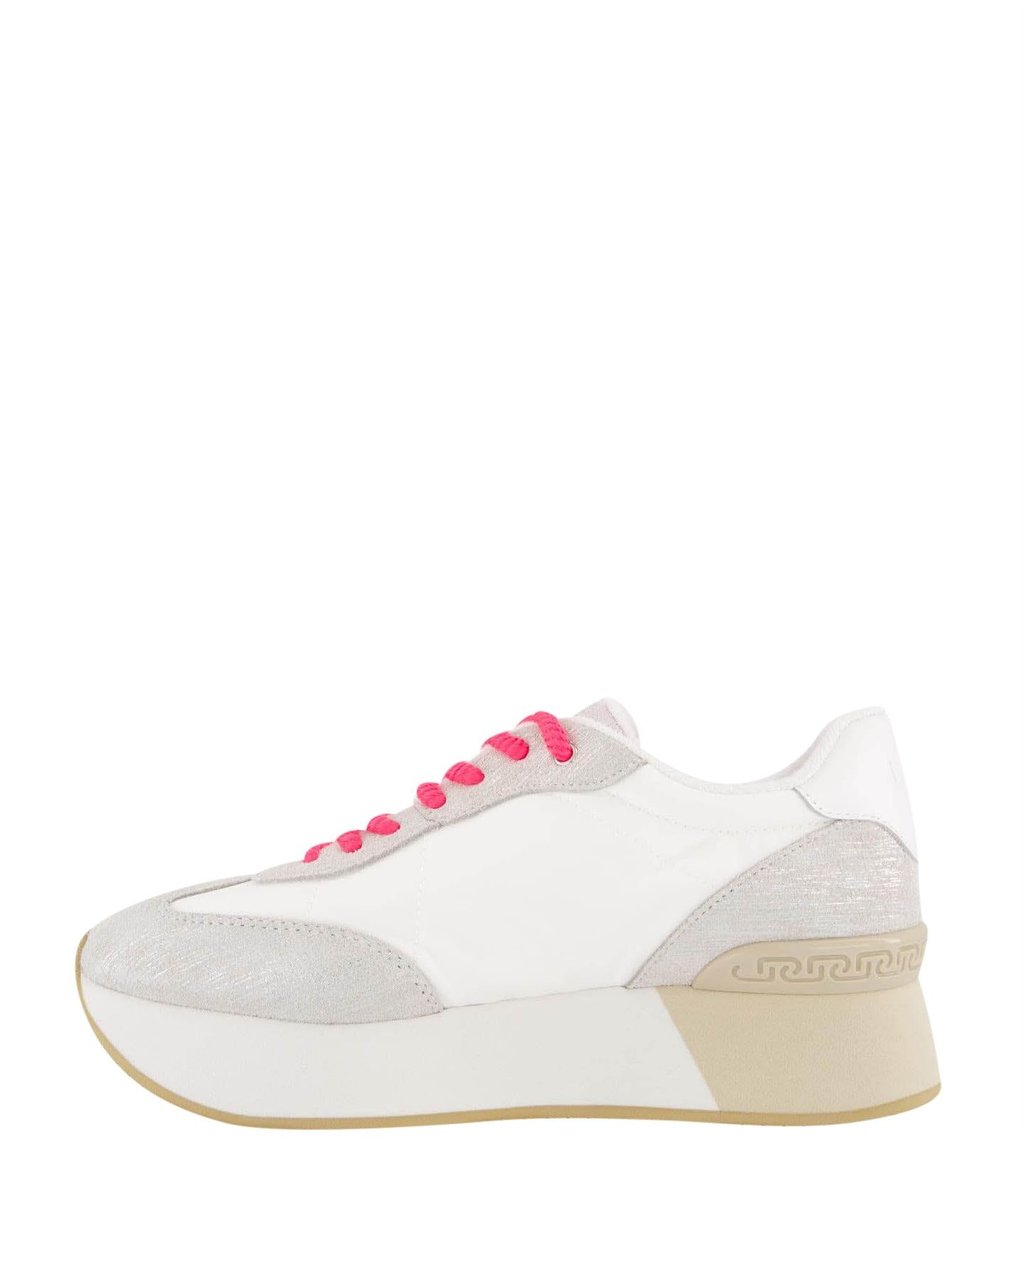 Liu Jo Dames Dreamy 03 Sneaker Wit/Roze Wit